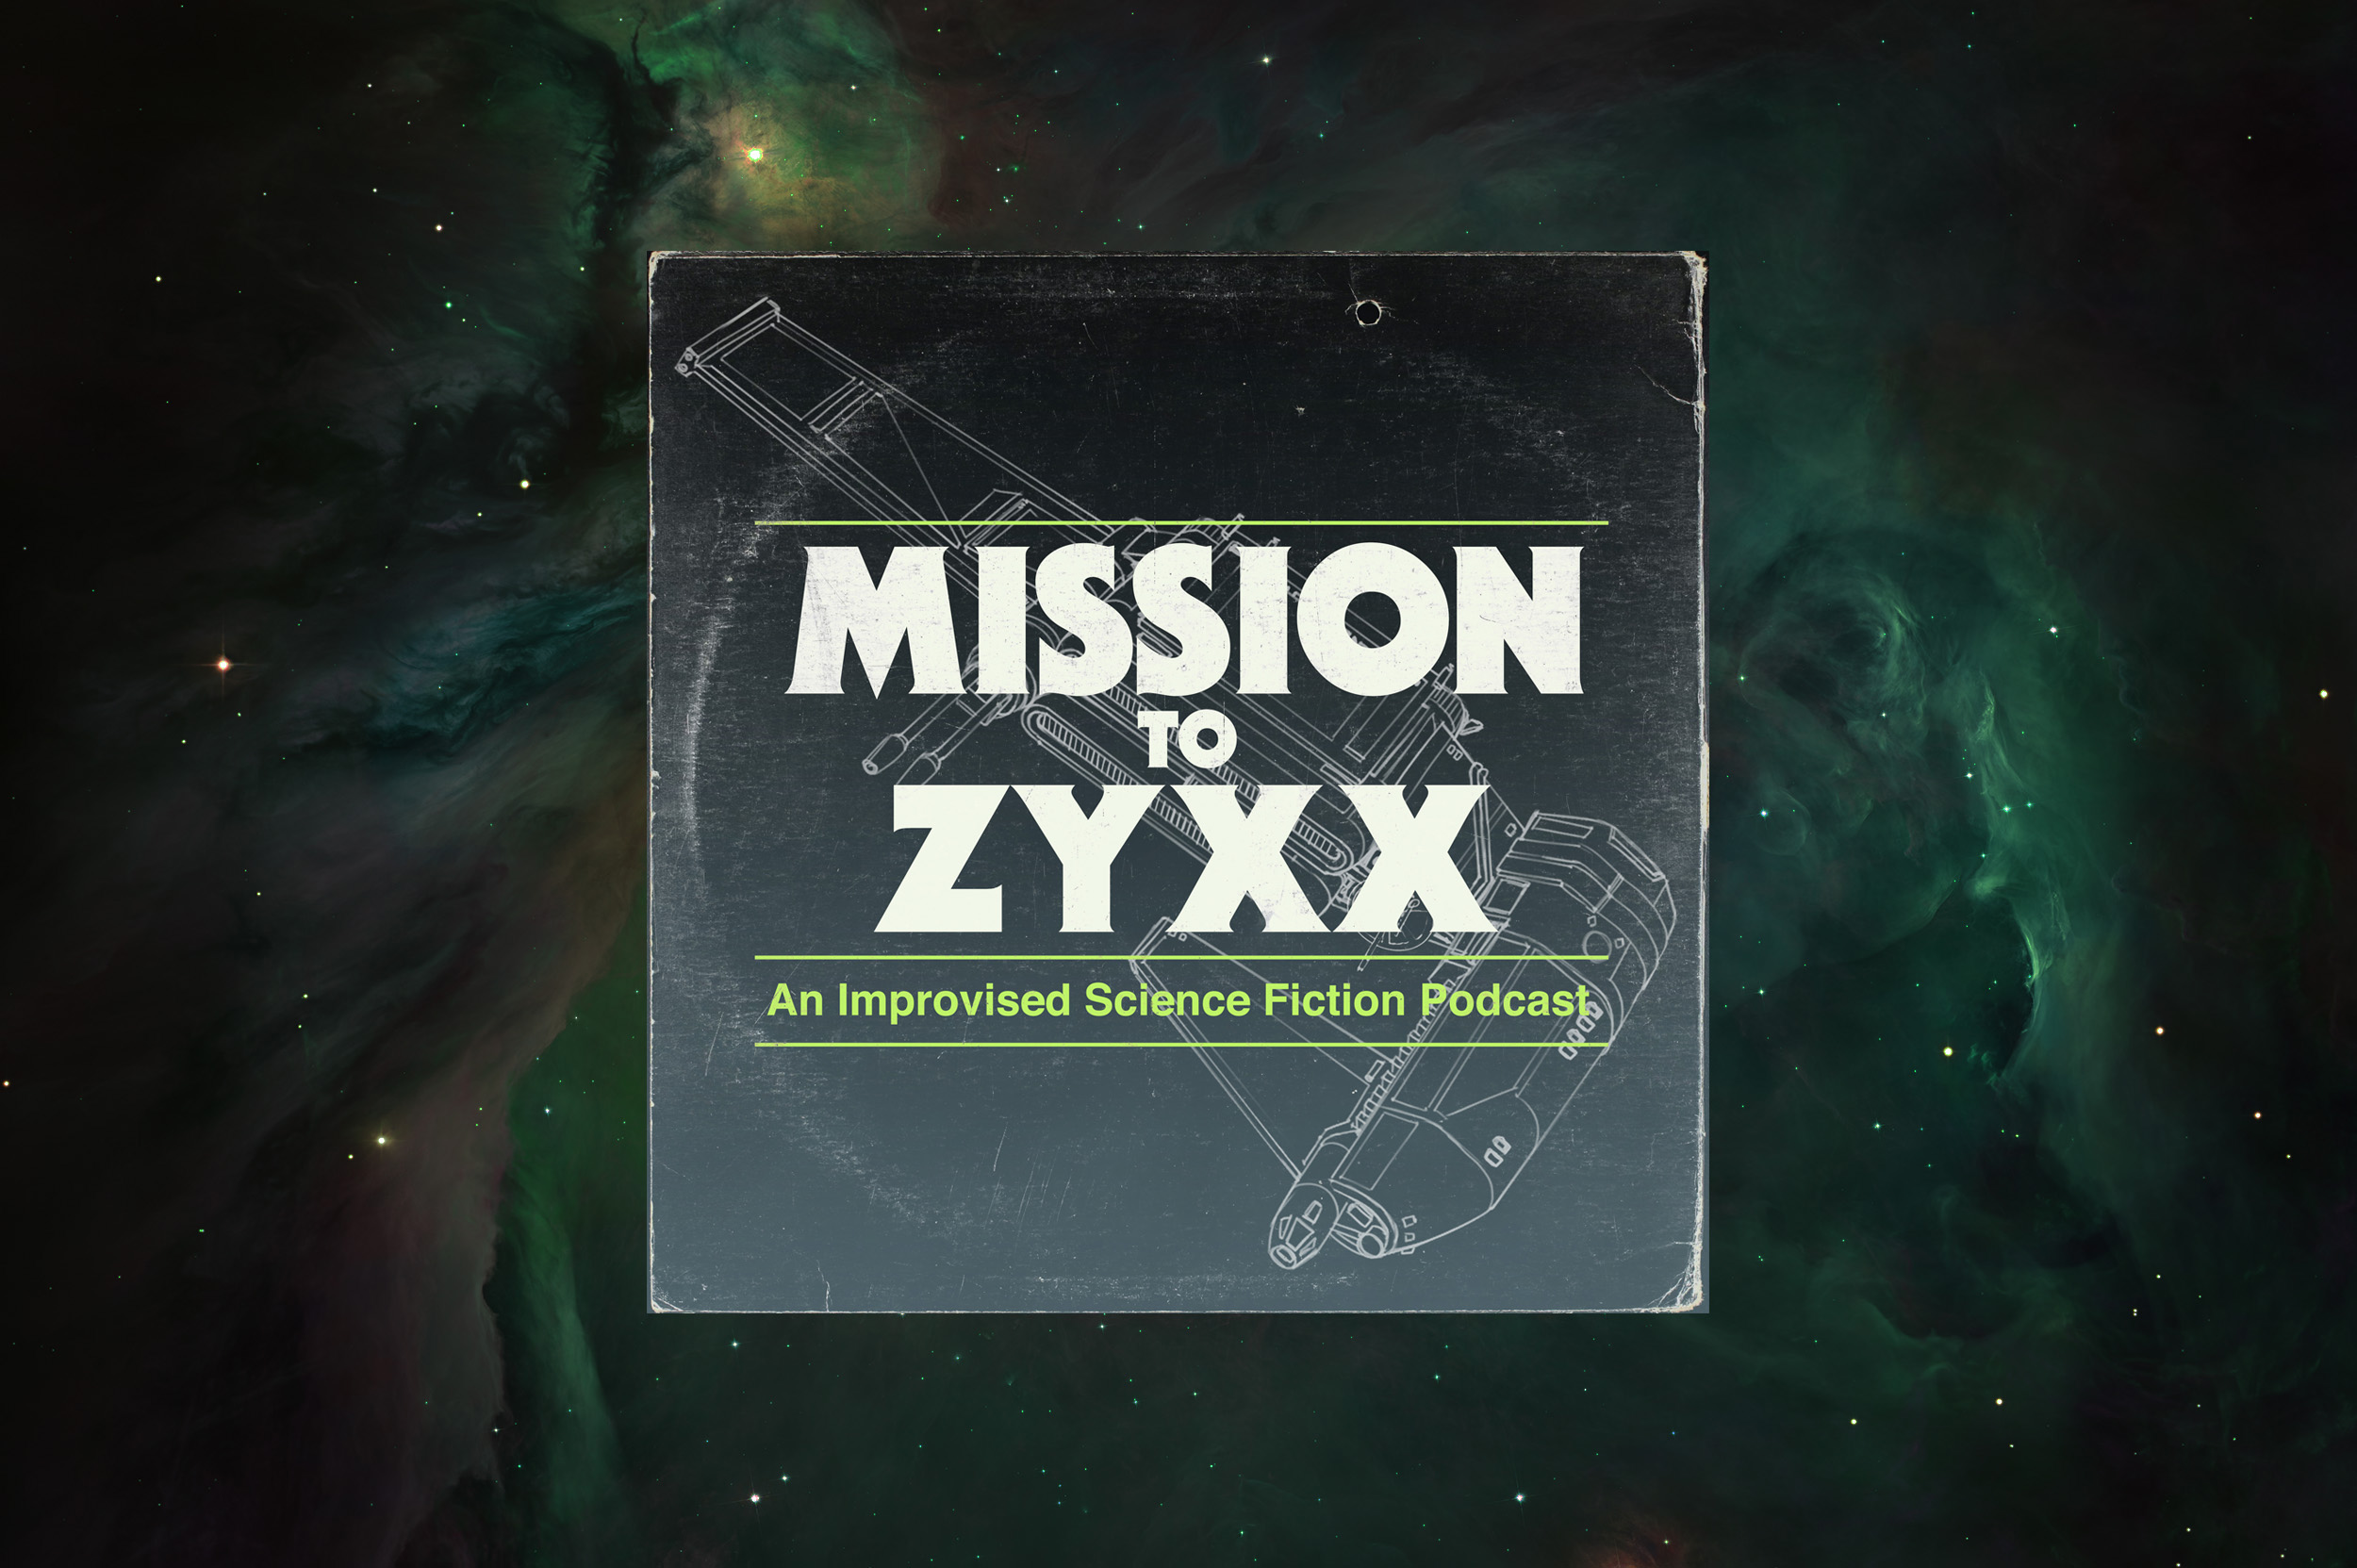 Season 1 — Mission to Zyxx